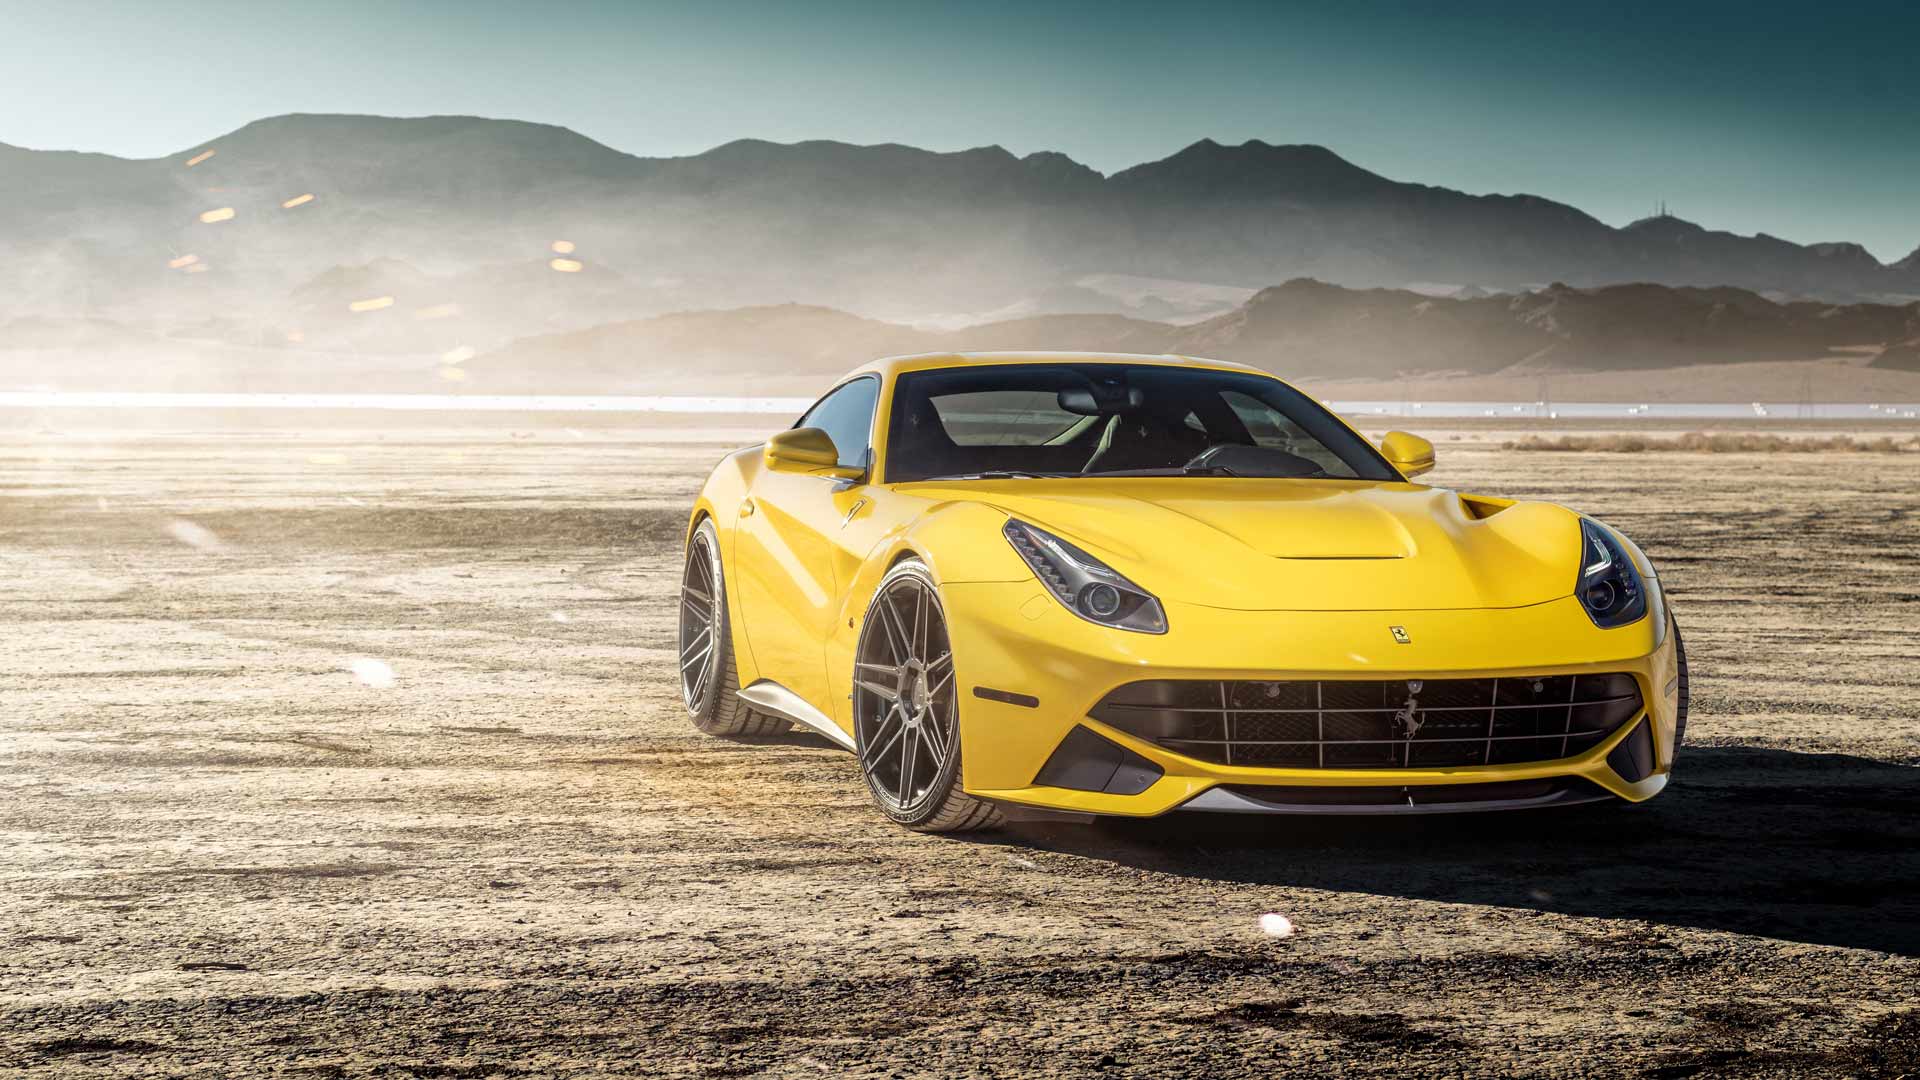 Επίσημο: Η πρώτη ηλεκτρική Ferrari έρχεται το 2025